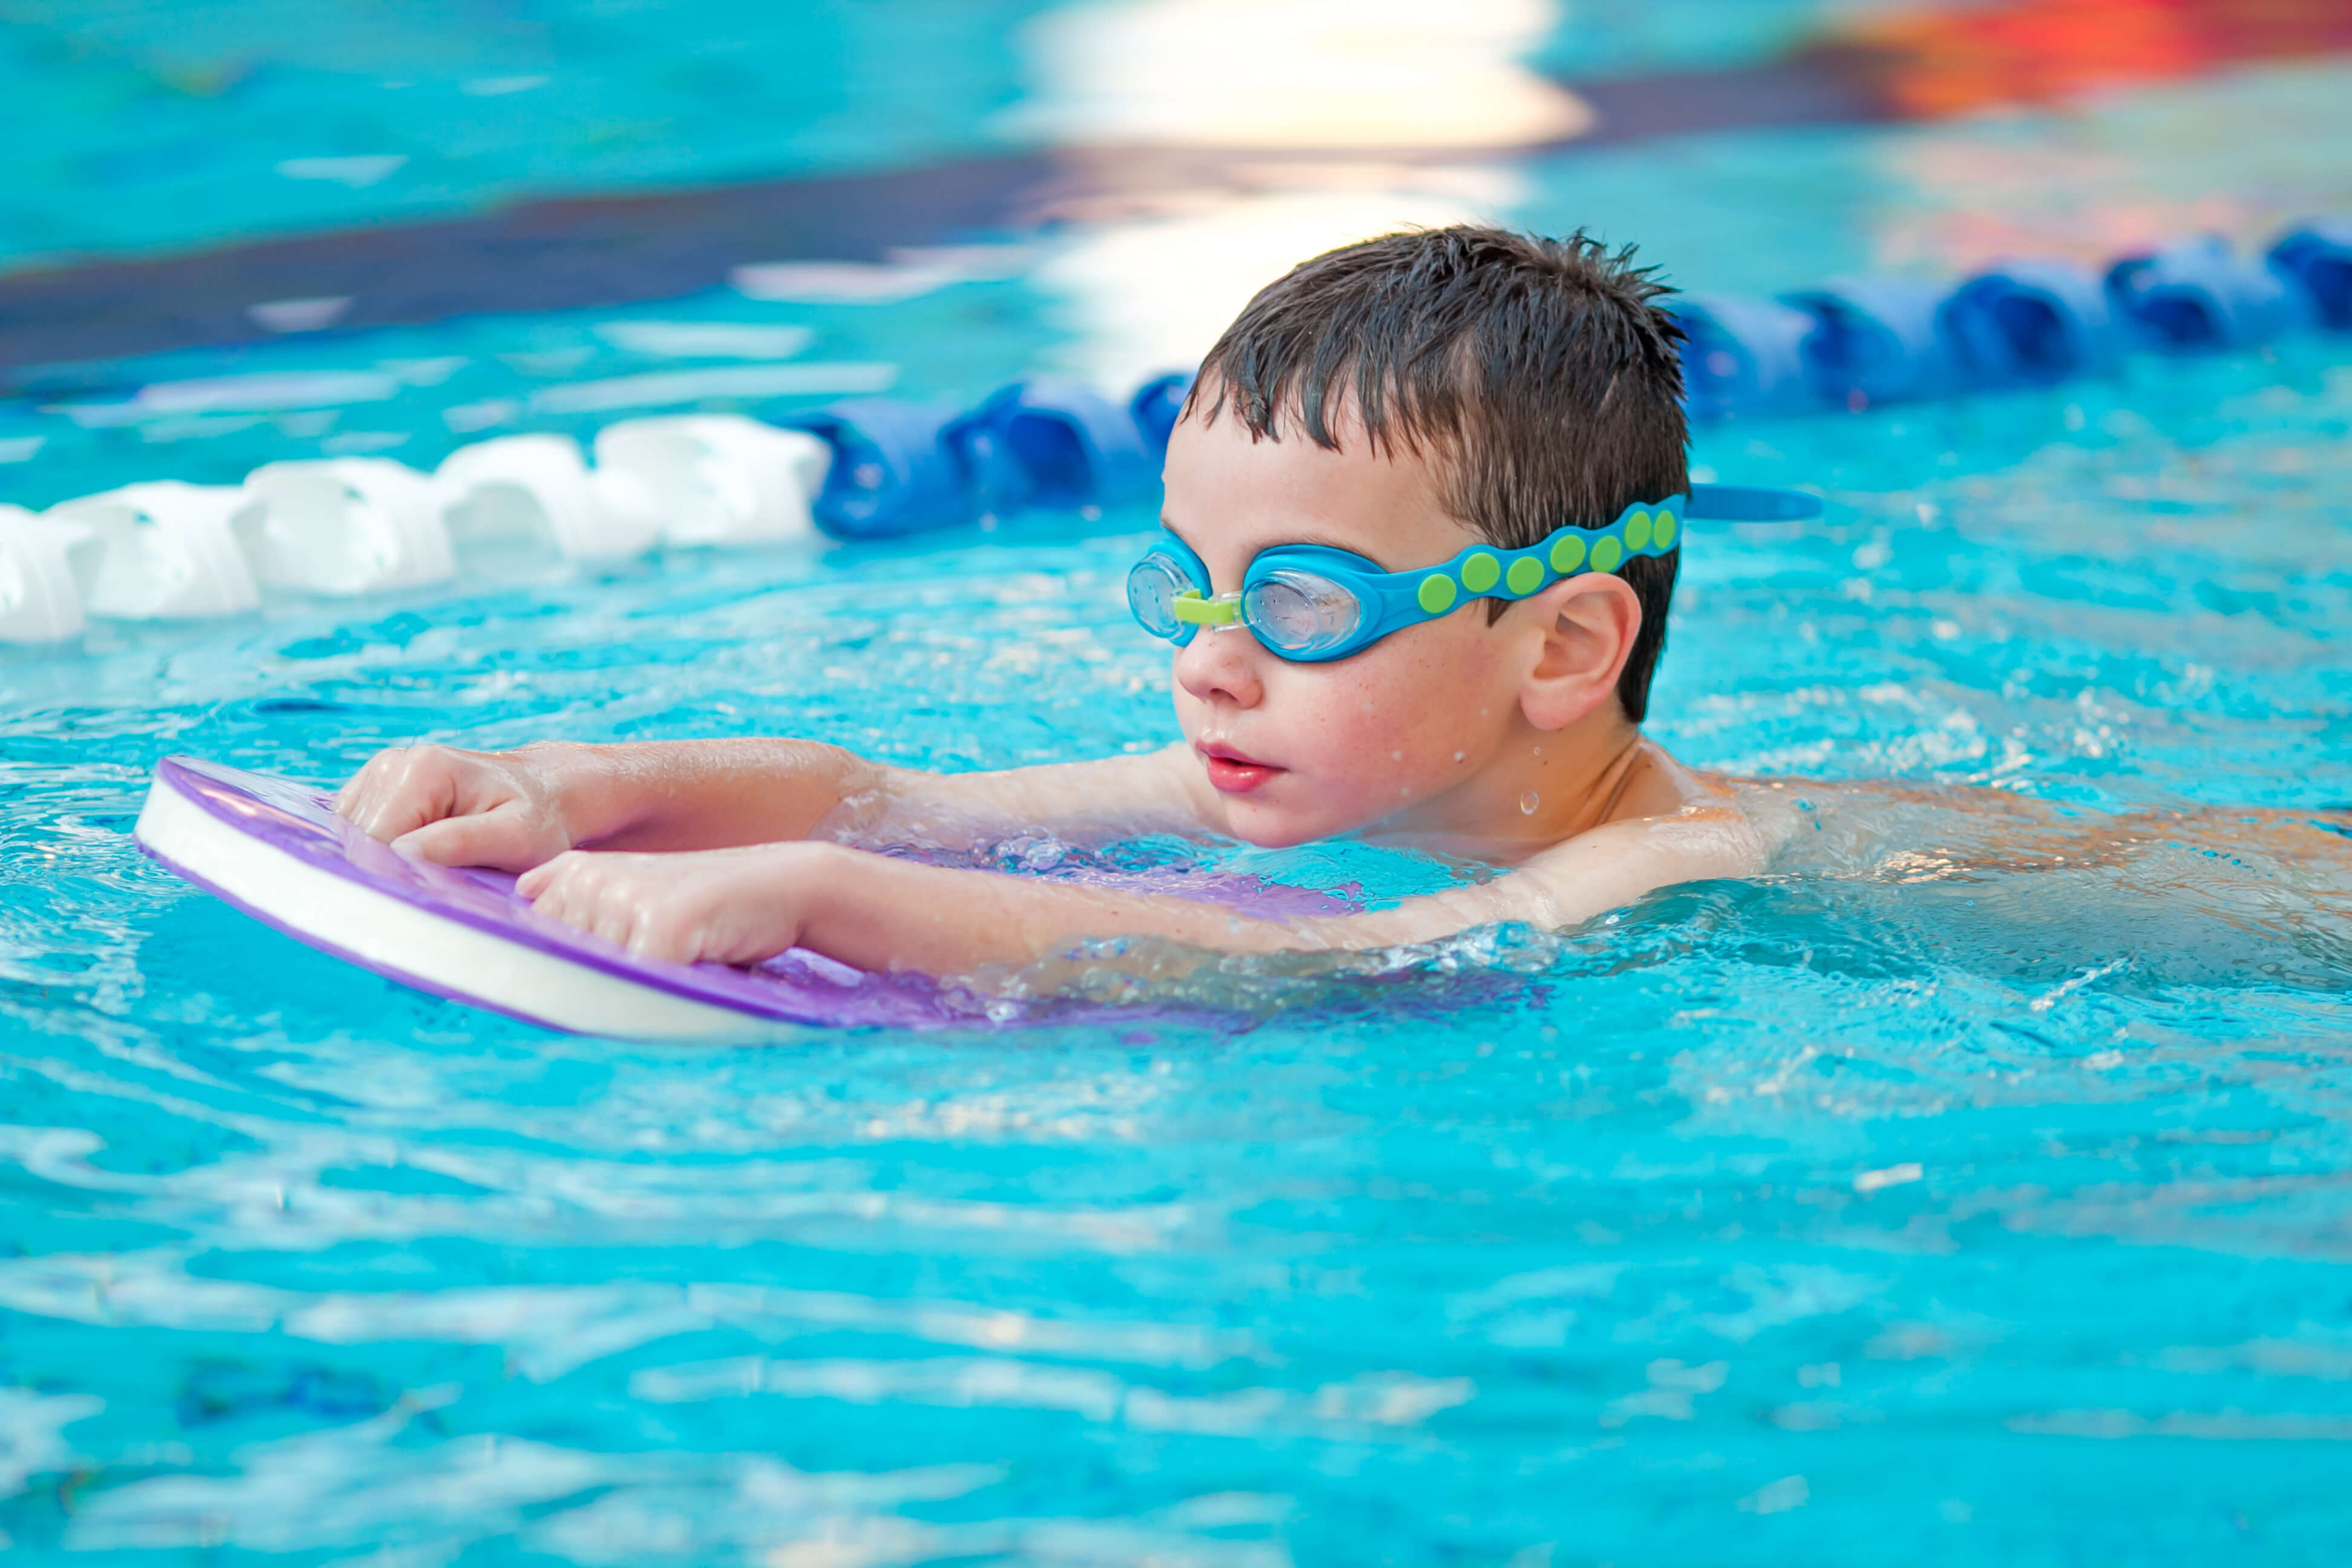 Занятие обучение плаванию. Дети в бассейне. Плавание дети. Плавание в бассейне дети. Мальчик плавает в бассейне.